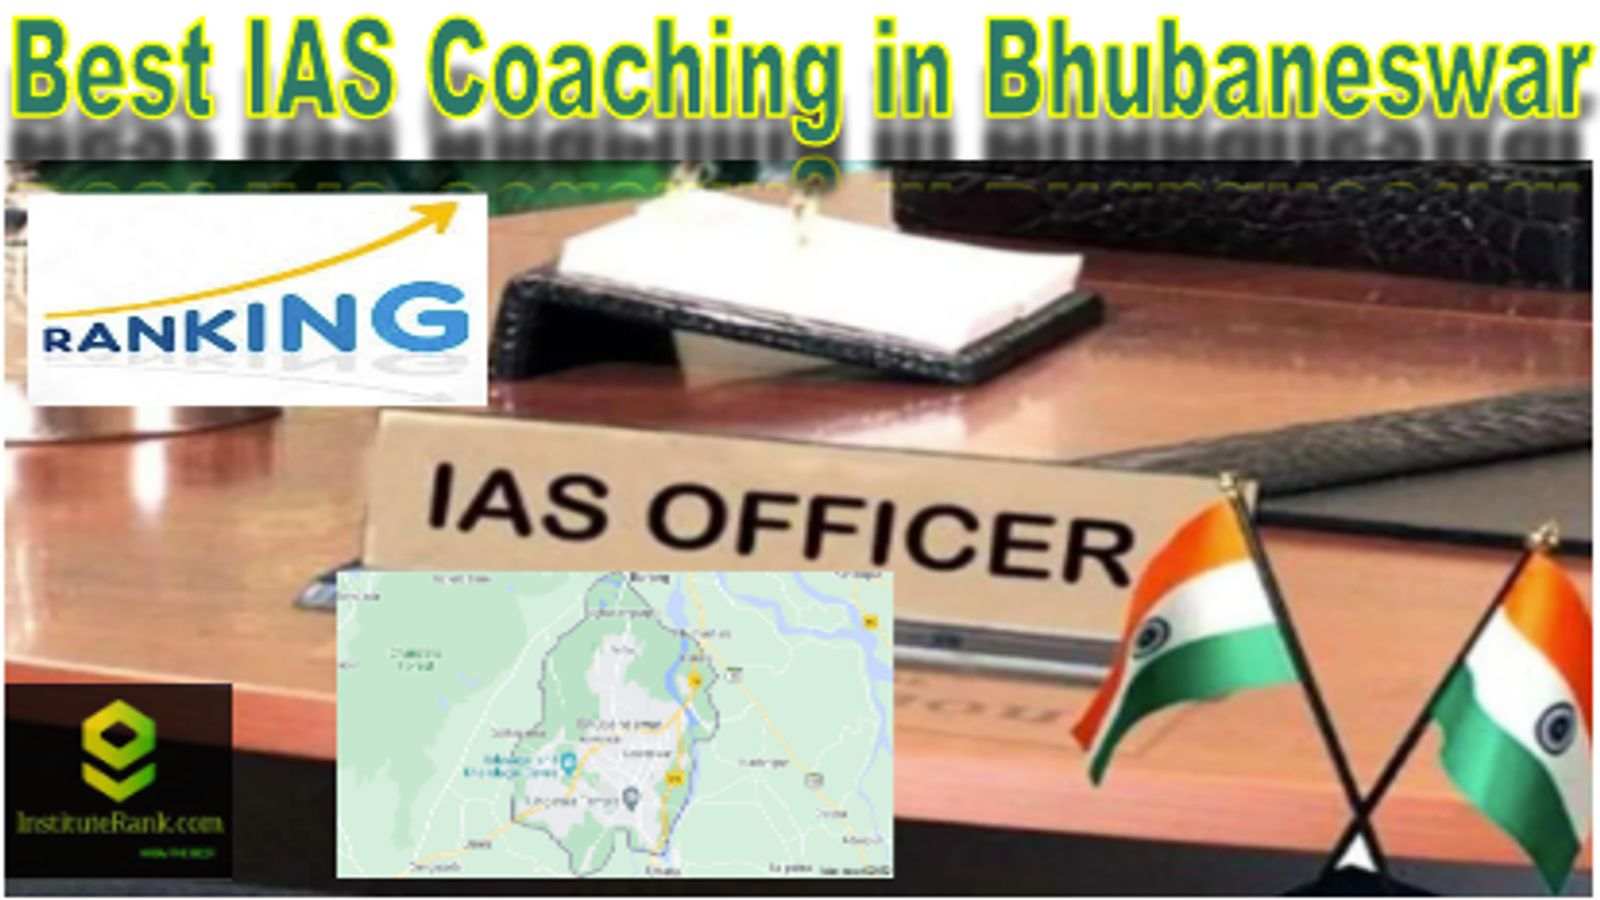 Best IAS Coaching in Bhubaneswar Ranking 2022